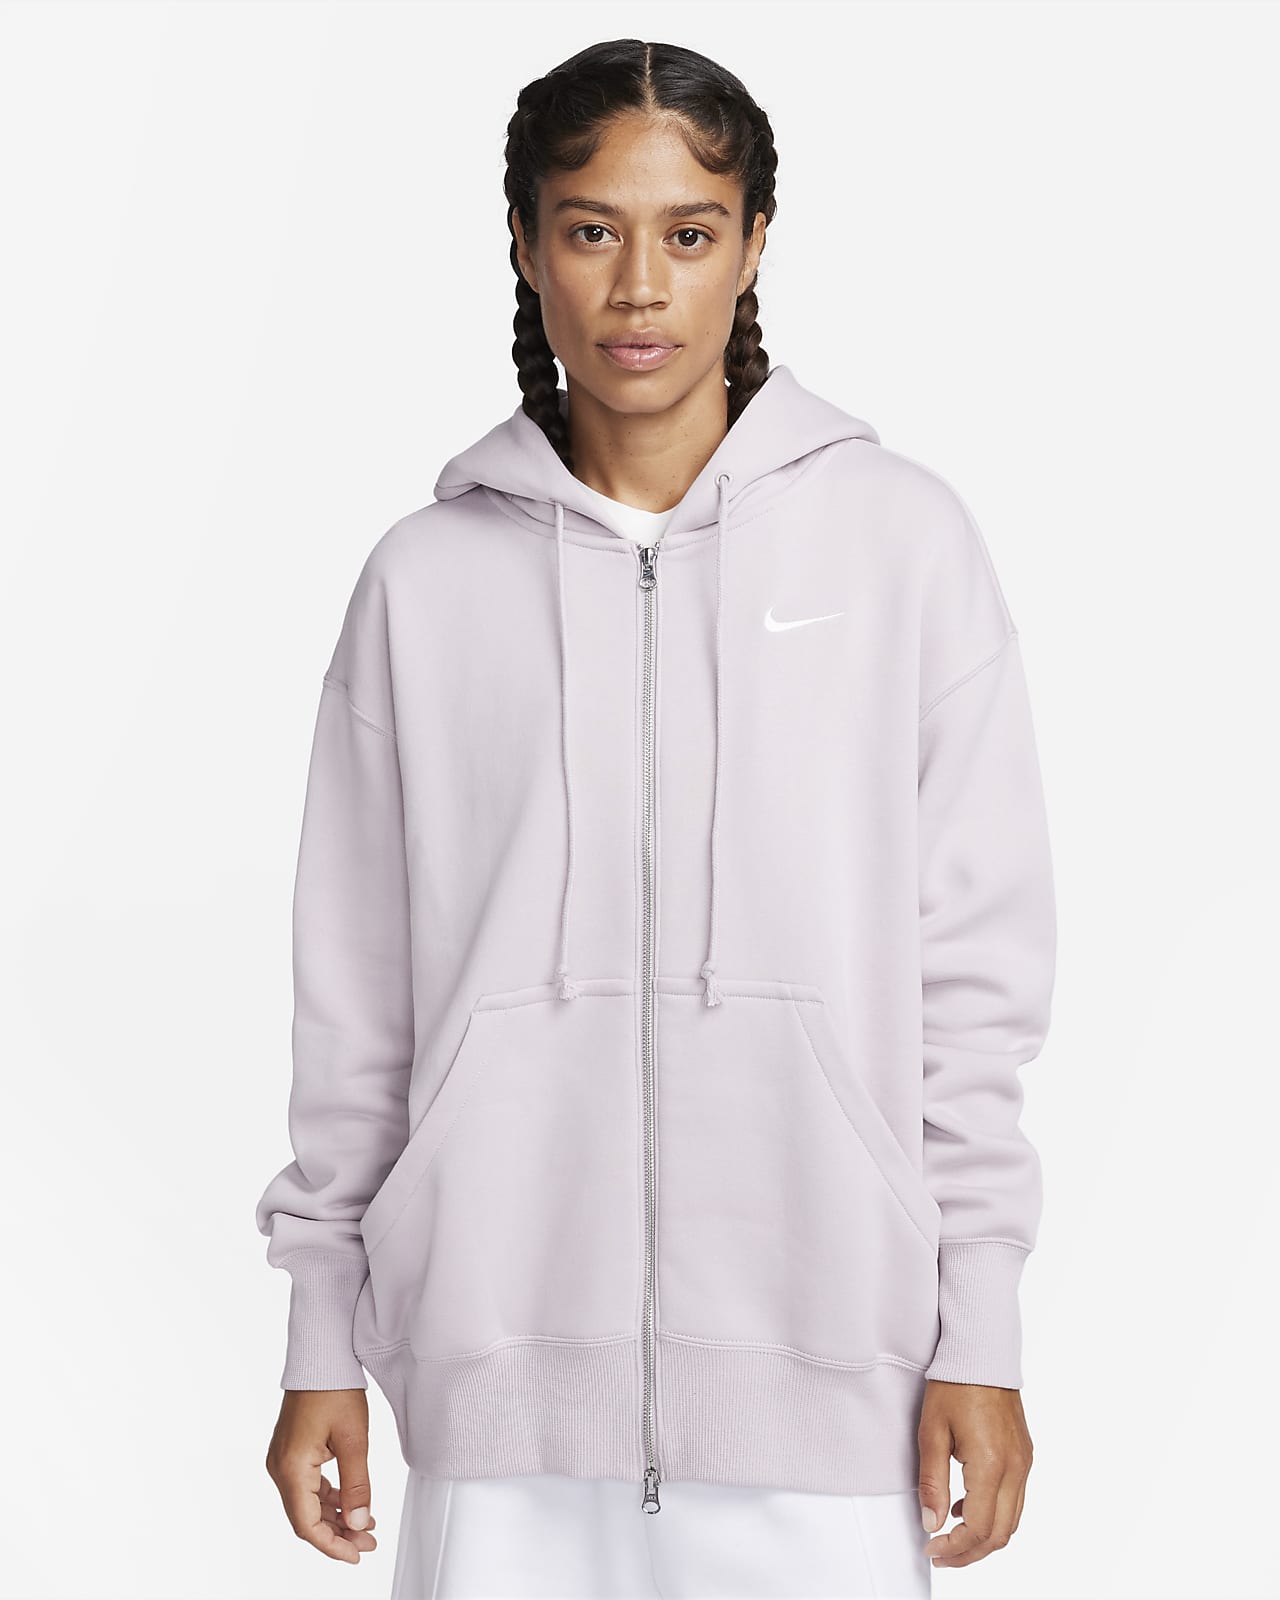 Dámská volná mikina Nike Sportswear Phoenix s kapucí a zipem po celé délce